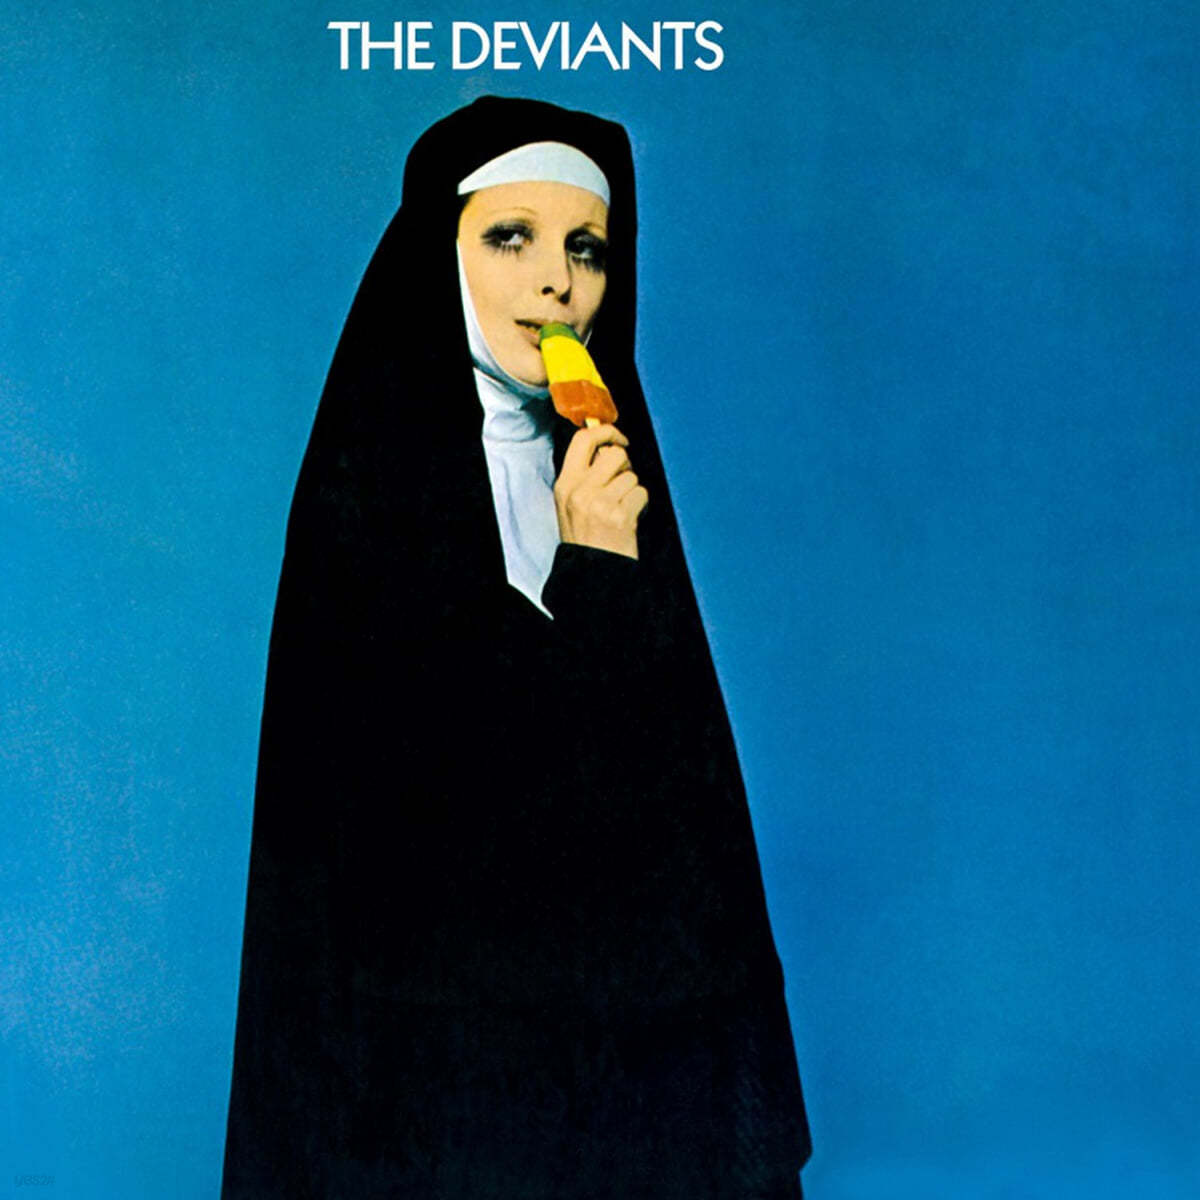 The Deviants (디비언츠) - The Deviants [LP] 